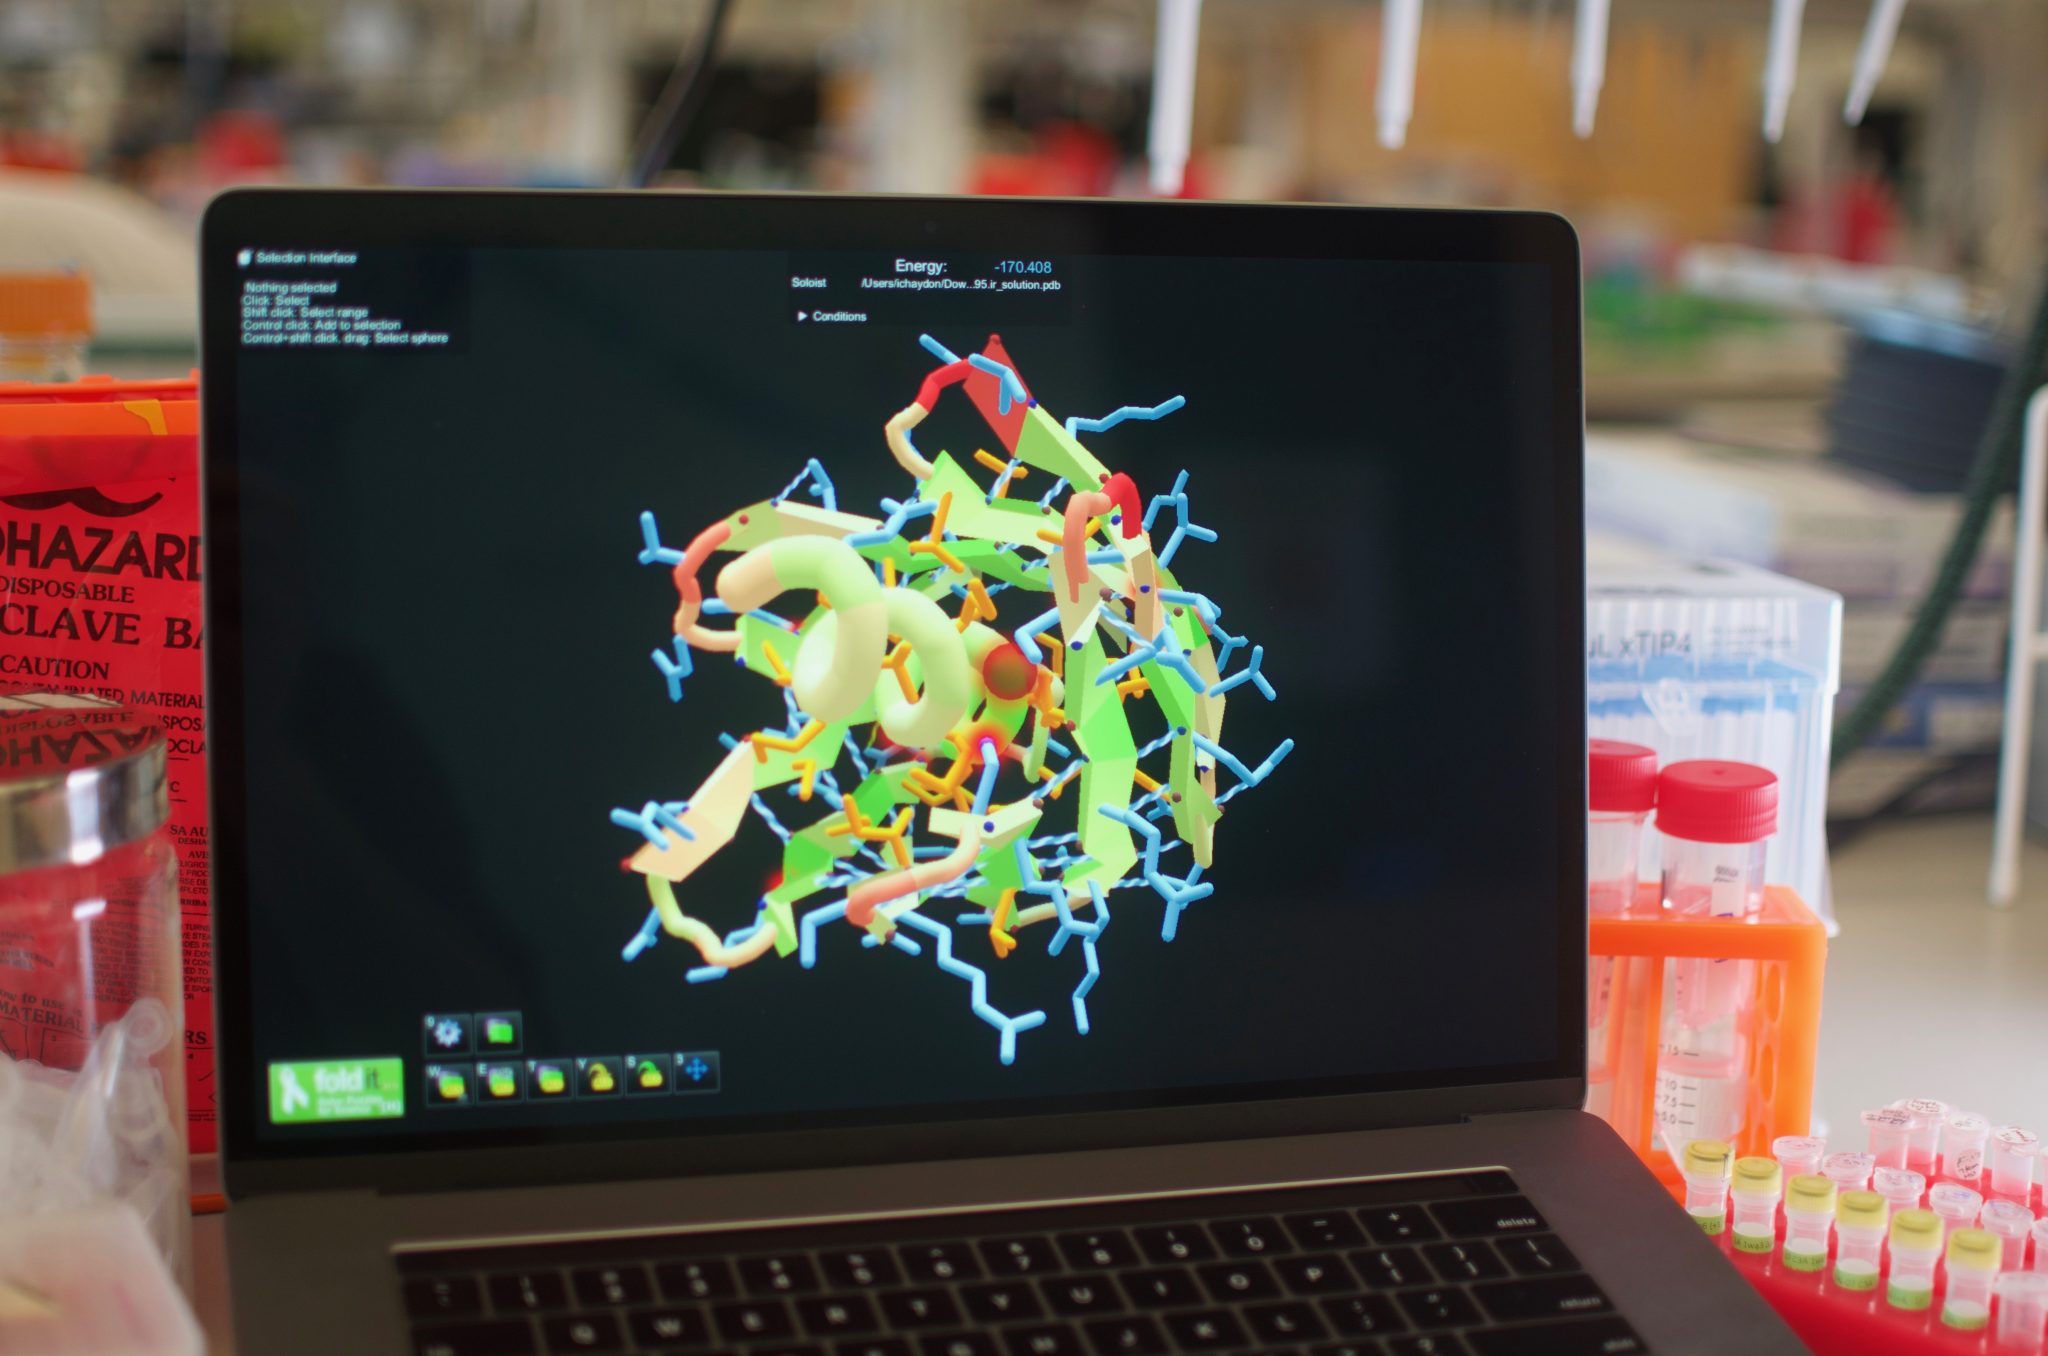 Protein design by citizen scientists